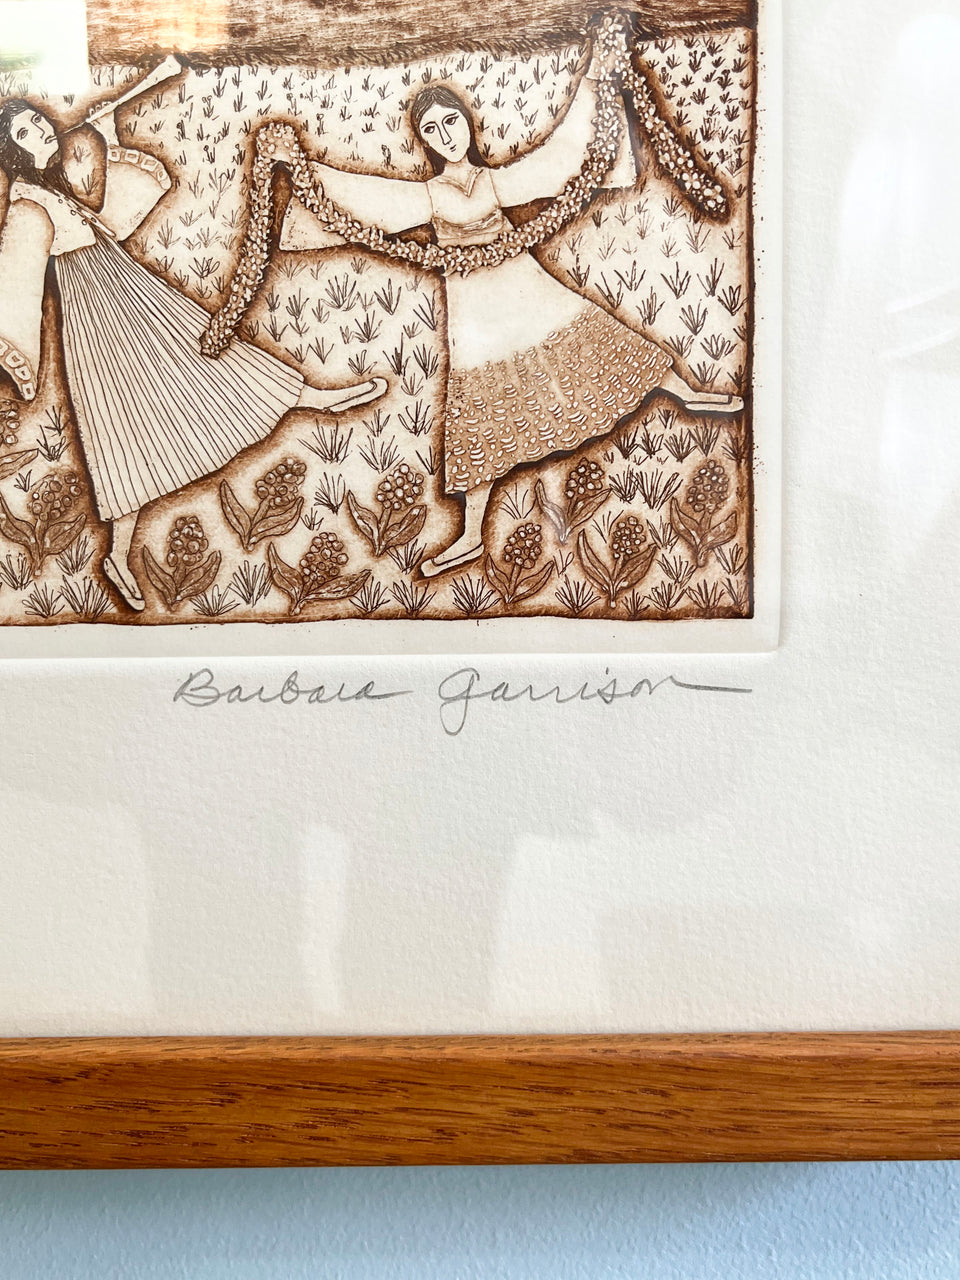 Barbara Garrison Etchings/バーバラ・ガリソン エッチング 銅版画 額 インテリア